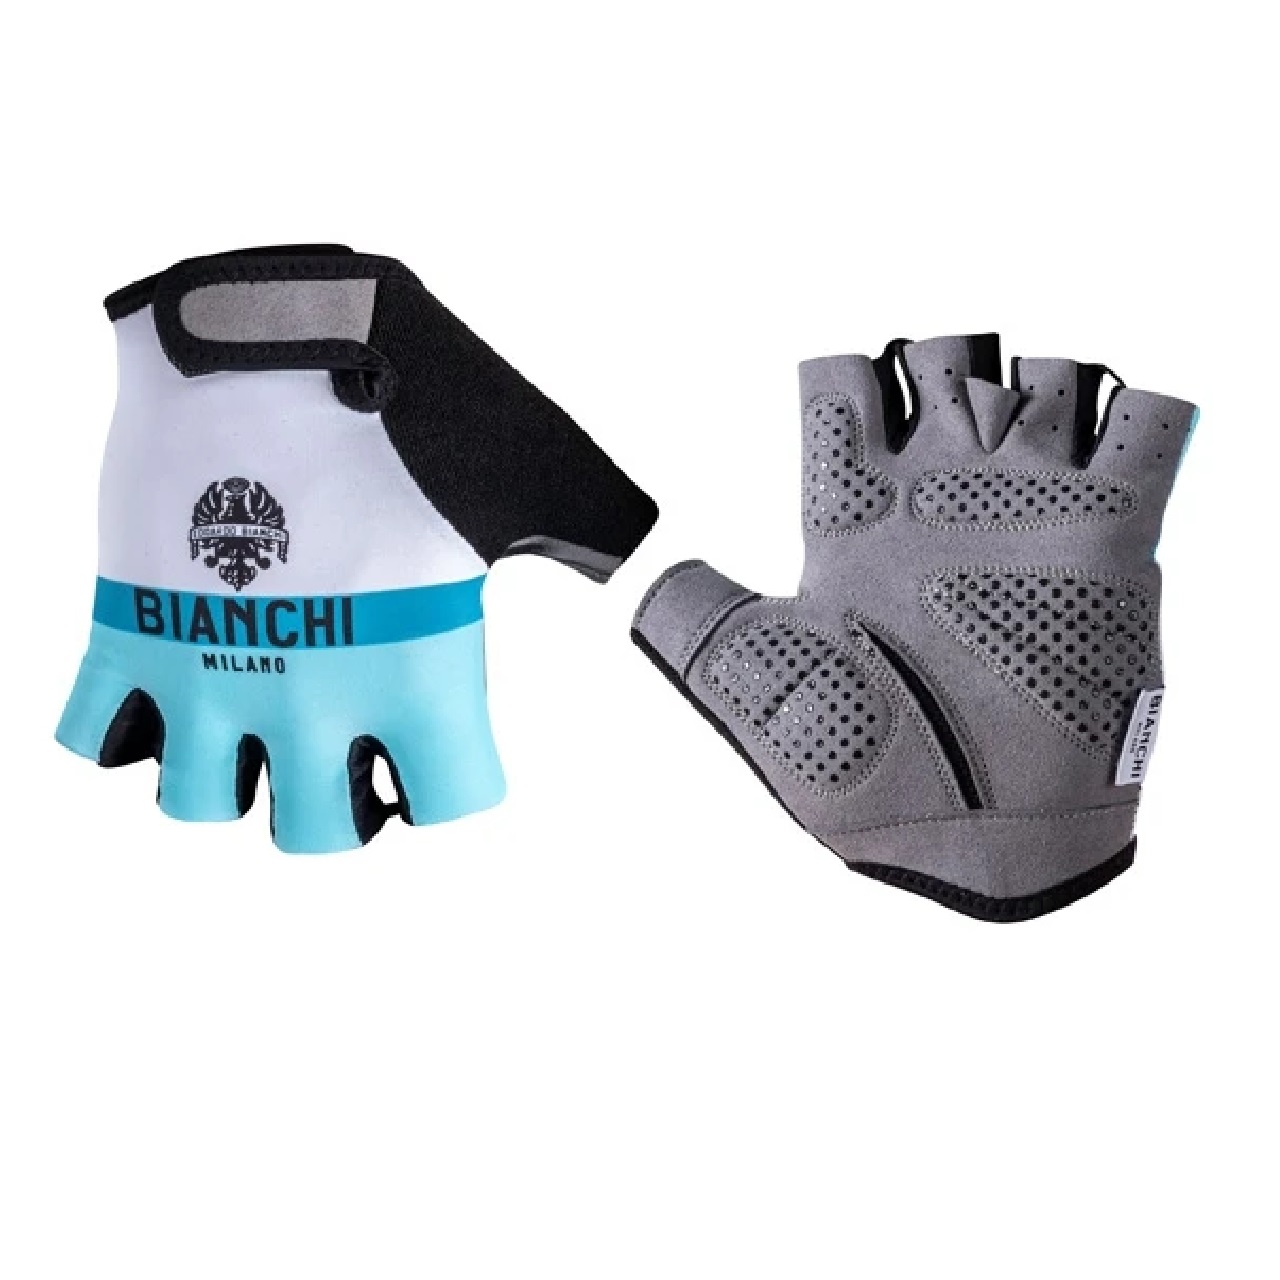 Nalini 2021 Bianchi Milano ANAPO Cycling Gloves - White/Celeste